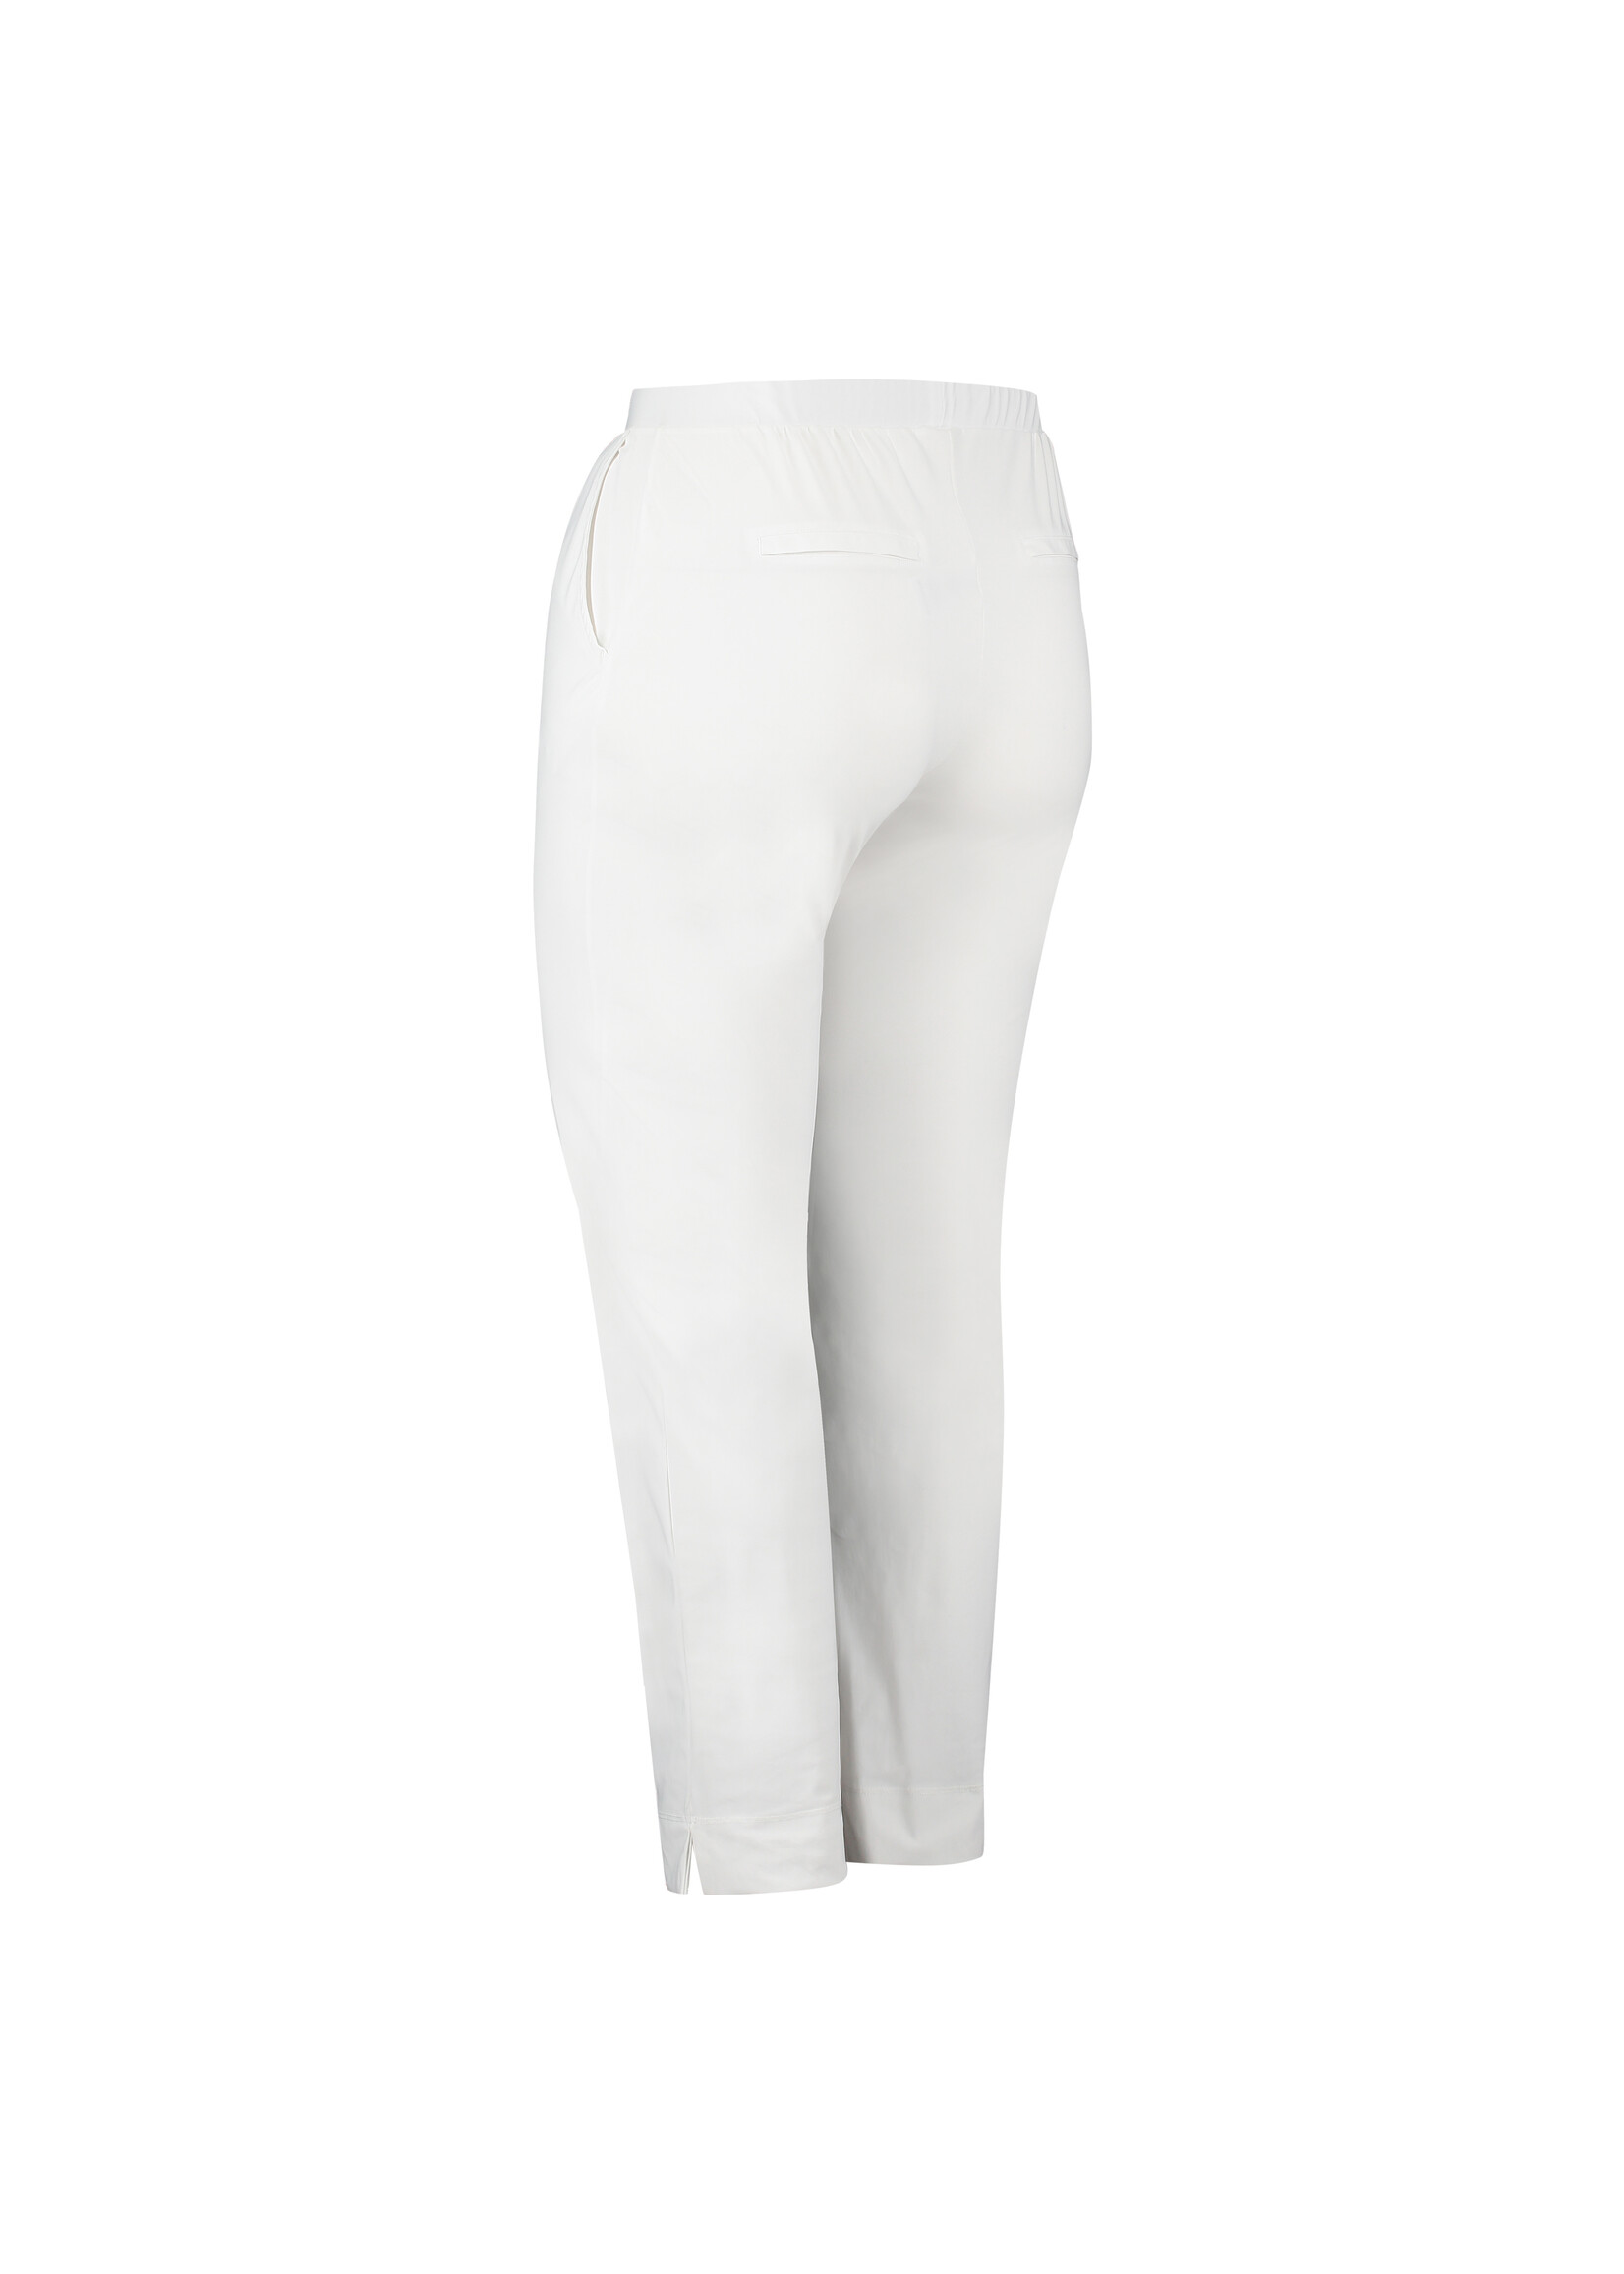 Pants 7/8 White kleding vanaf Kijan 40 Shop dames maat voor je - leukste - hier Boetiek